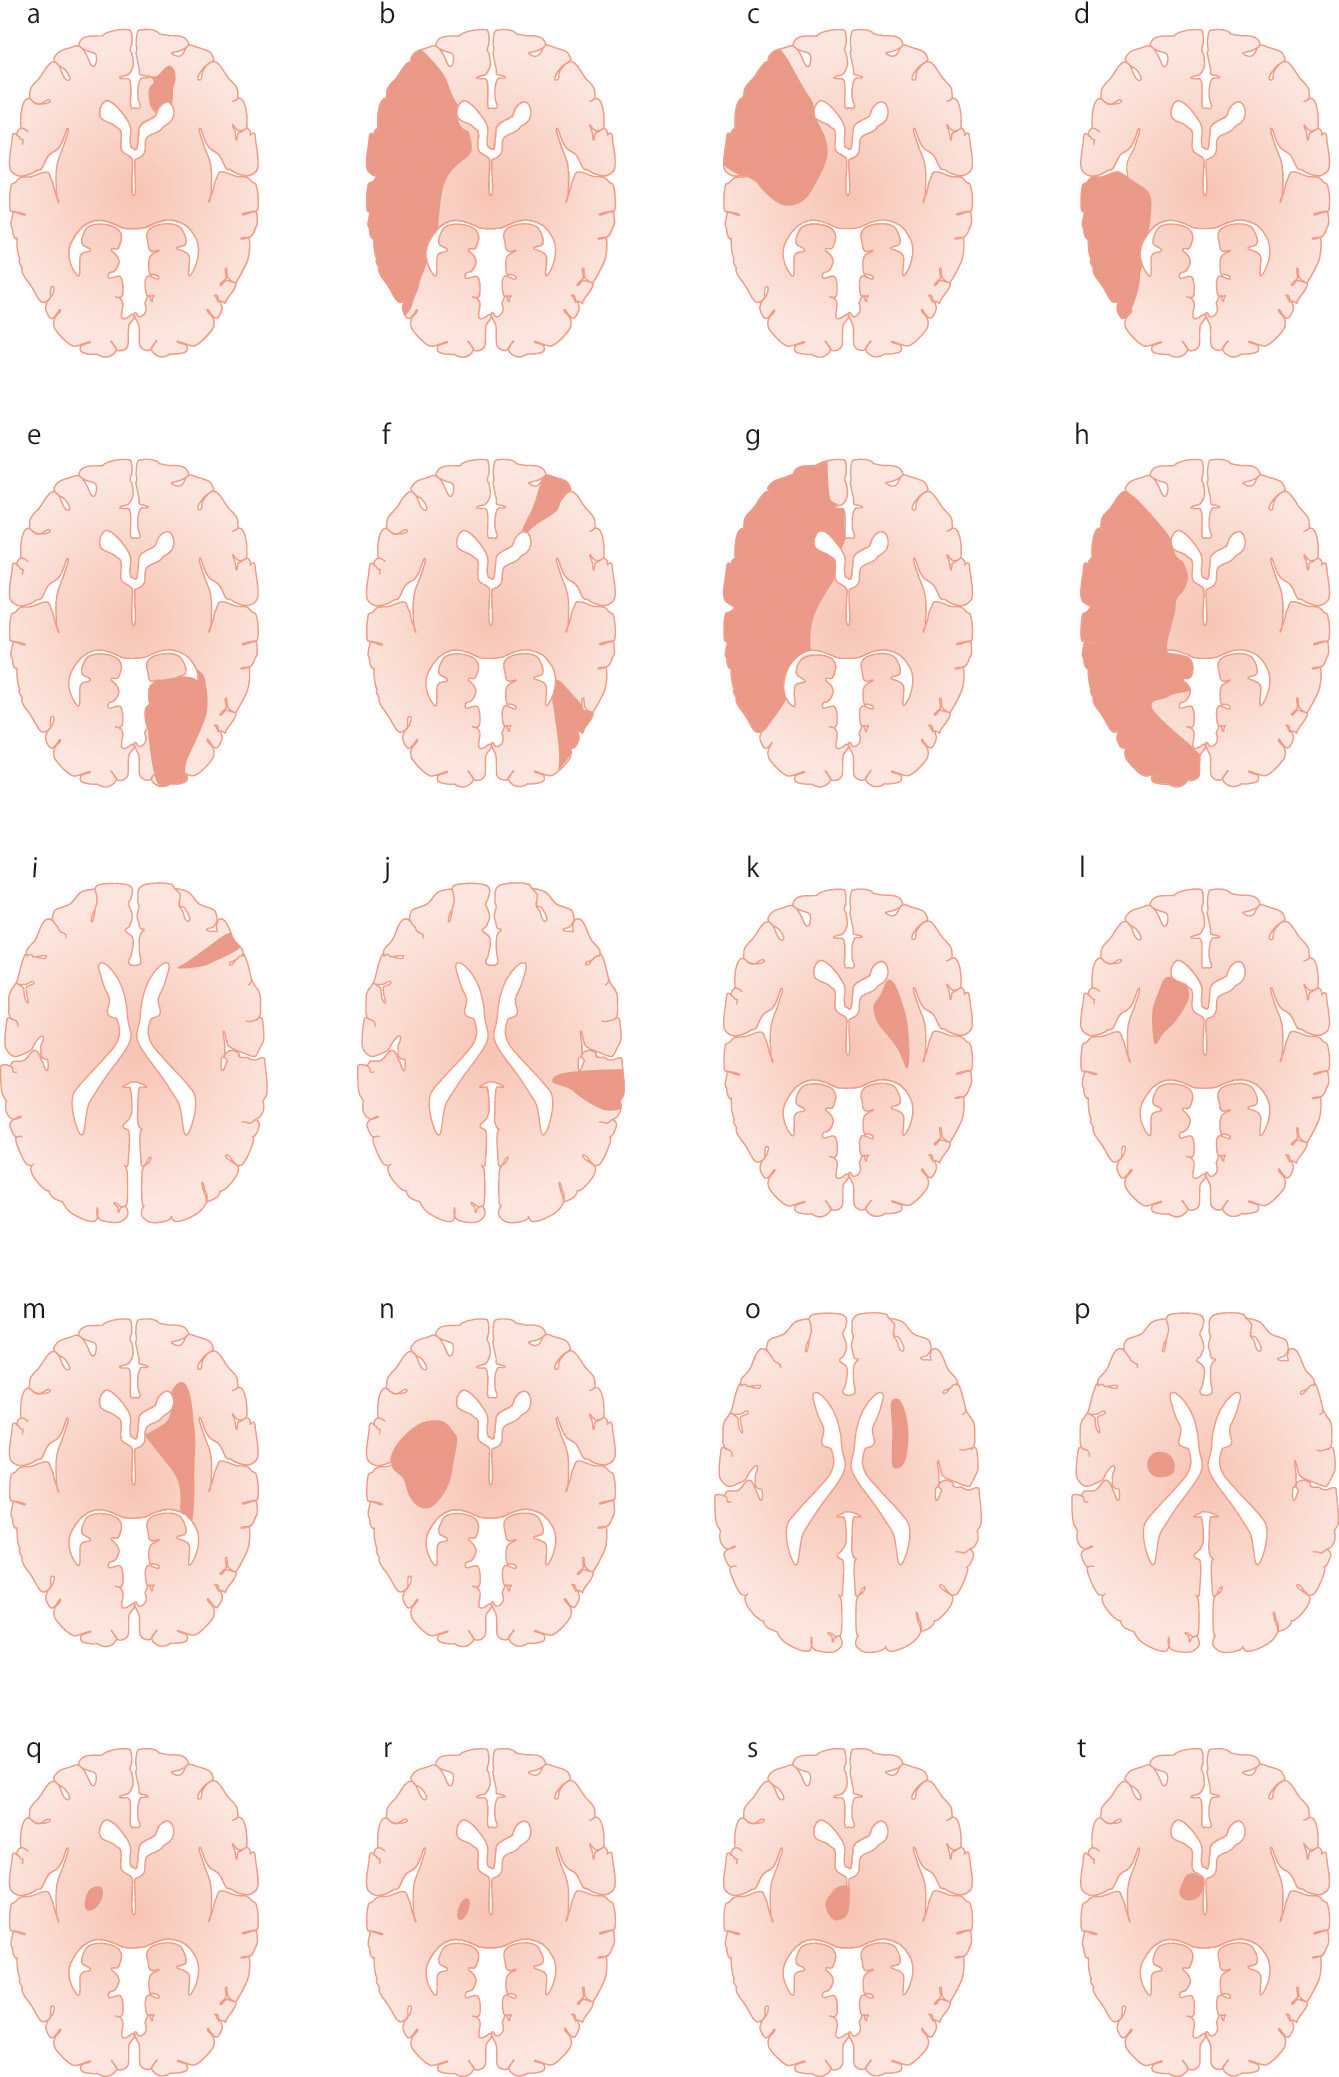 ⓔ図18-5-1　梗塞部位のシェーマ a：前大脳動脈領域梗塞 (血栓性のA2閉塞) b：中大脳動脈領域全体の梗塞 (塞栓性) c：中大脳動脈のsuperior trunk領域梗塞 (塞栓性) d：中大脳動脈のinferior trunk領域梗塞 (塞栓性) e：後大脳動脈領域梗塞 (塞栓性) f：分水嶺梗塞 (血栓性内頸動脈閉塞) g：2枝病変：前大脳動脈領域と中大脳動脈領域 (塞栓性) h：2枝病変：中大脳動脈領域と後大脳動脈領域 (塞栓性) i：軟膜動脈領域梗塞 (塞栓性) j：軟膜動脈領域梗塞 (塞栓性) k：線条体内包梗塞 (塞栓性あるいは血栓性中大脳動脈閉塞) l：線条体内包梗塞 (塞栓性あるいは血栓性中大脳動脈閉塞) m：extended large subcortical infarct (血栓性内頸動脈閉塞) n：extended large subcortical infarct (血栓性中大脳動脈閉塞) o：終末領域梗塞 (血栓性内頸動脈閉塞) p：ラクナ梗塞：pure motor hemiparesis (血栓性) q：ラクナ梗塞：pure motor hemiparesis (血栓性) r：視床梗塞：inferolateral infarct (血栓性) s：視床梗塞：paramedian thalamic infarct (塞栓性) t：視床梗塞：tuberothalamic infarct (血栓性)